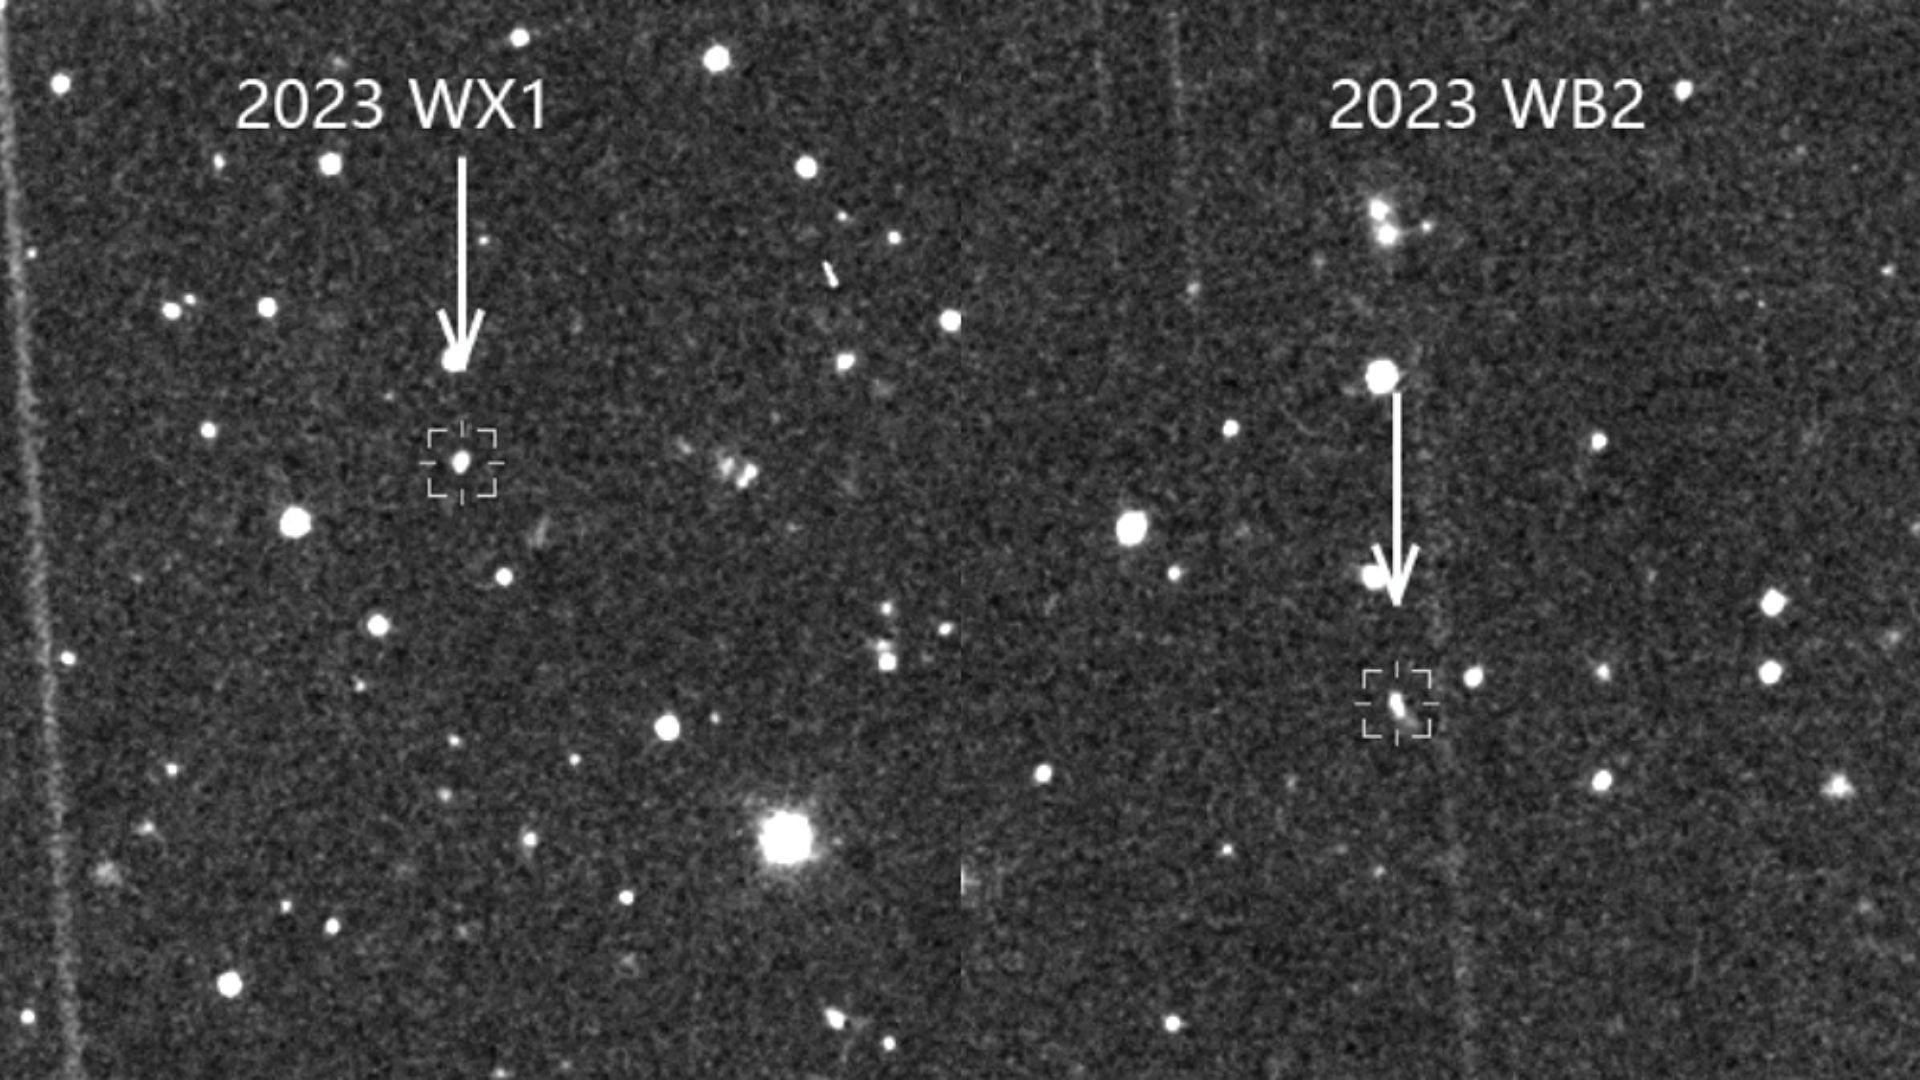 Telescopio chino detecta 2 asteroides cercanos a la Tierra